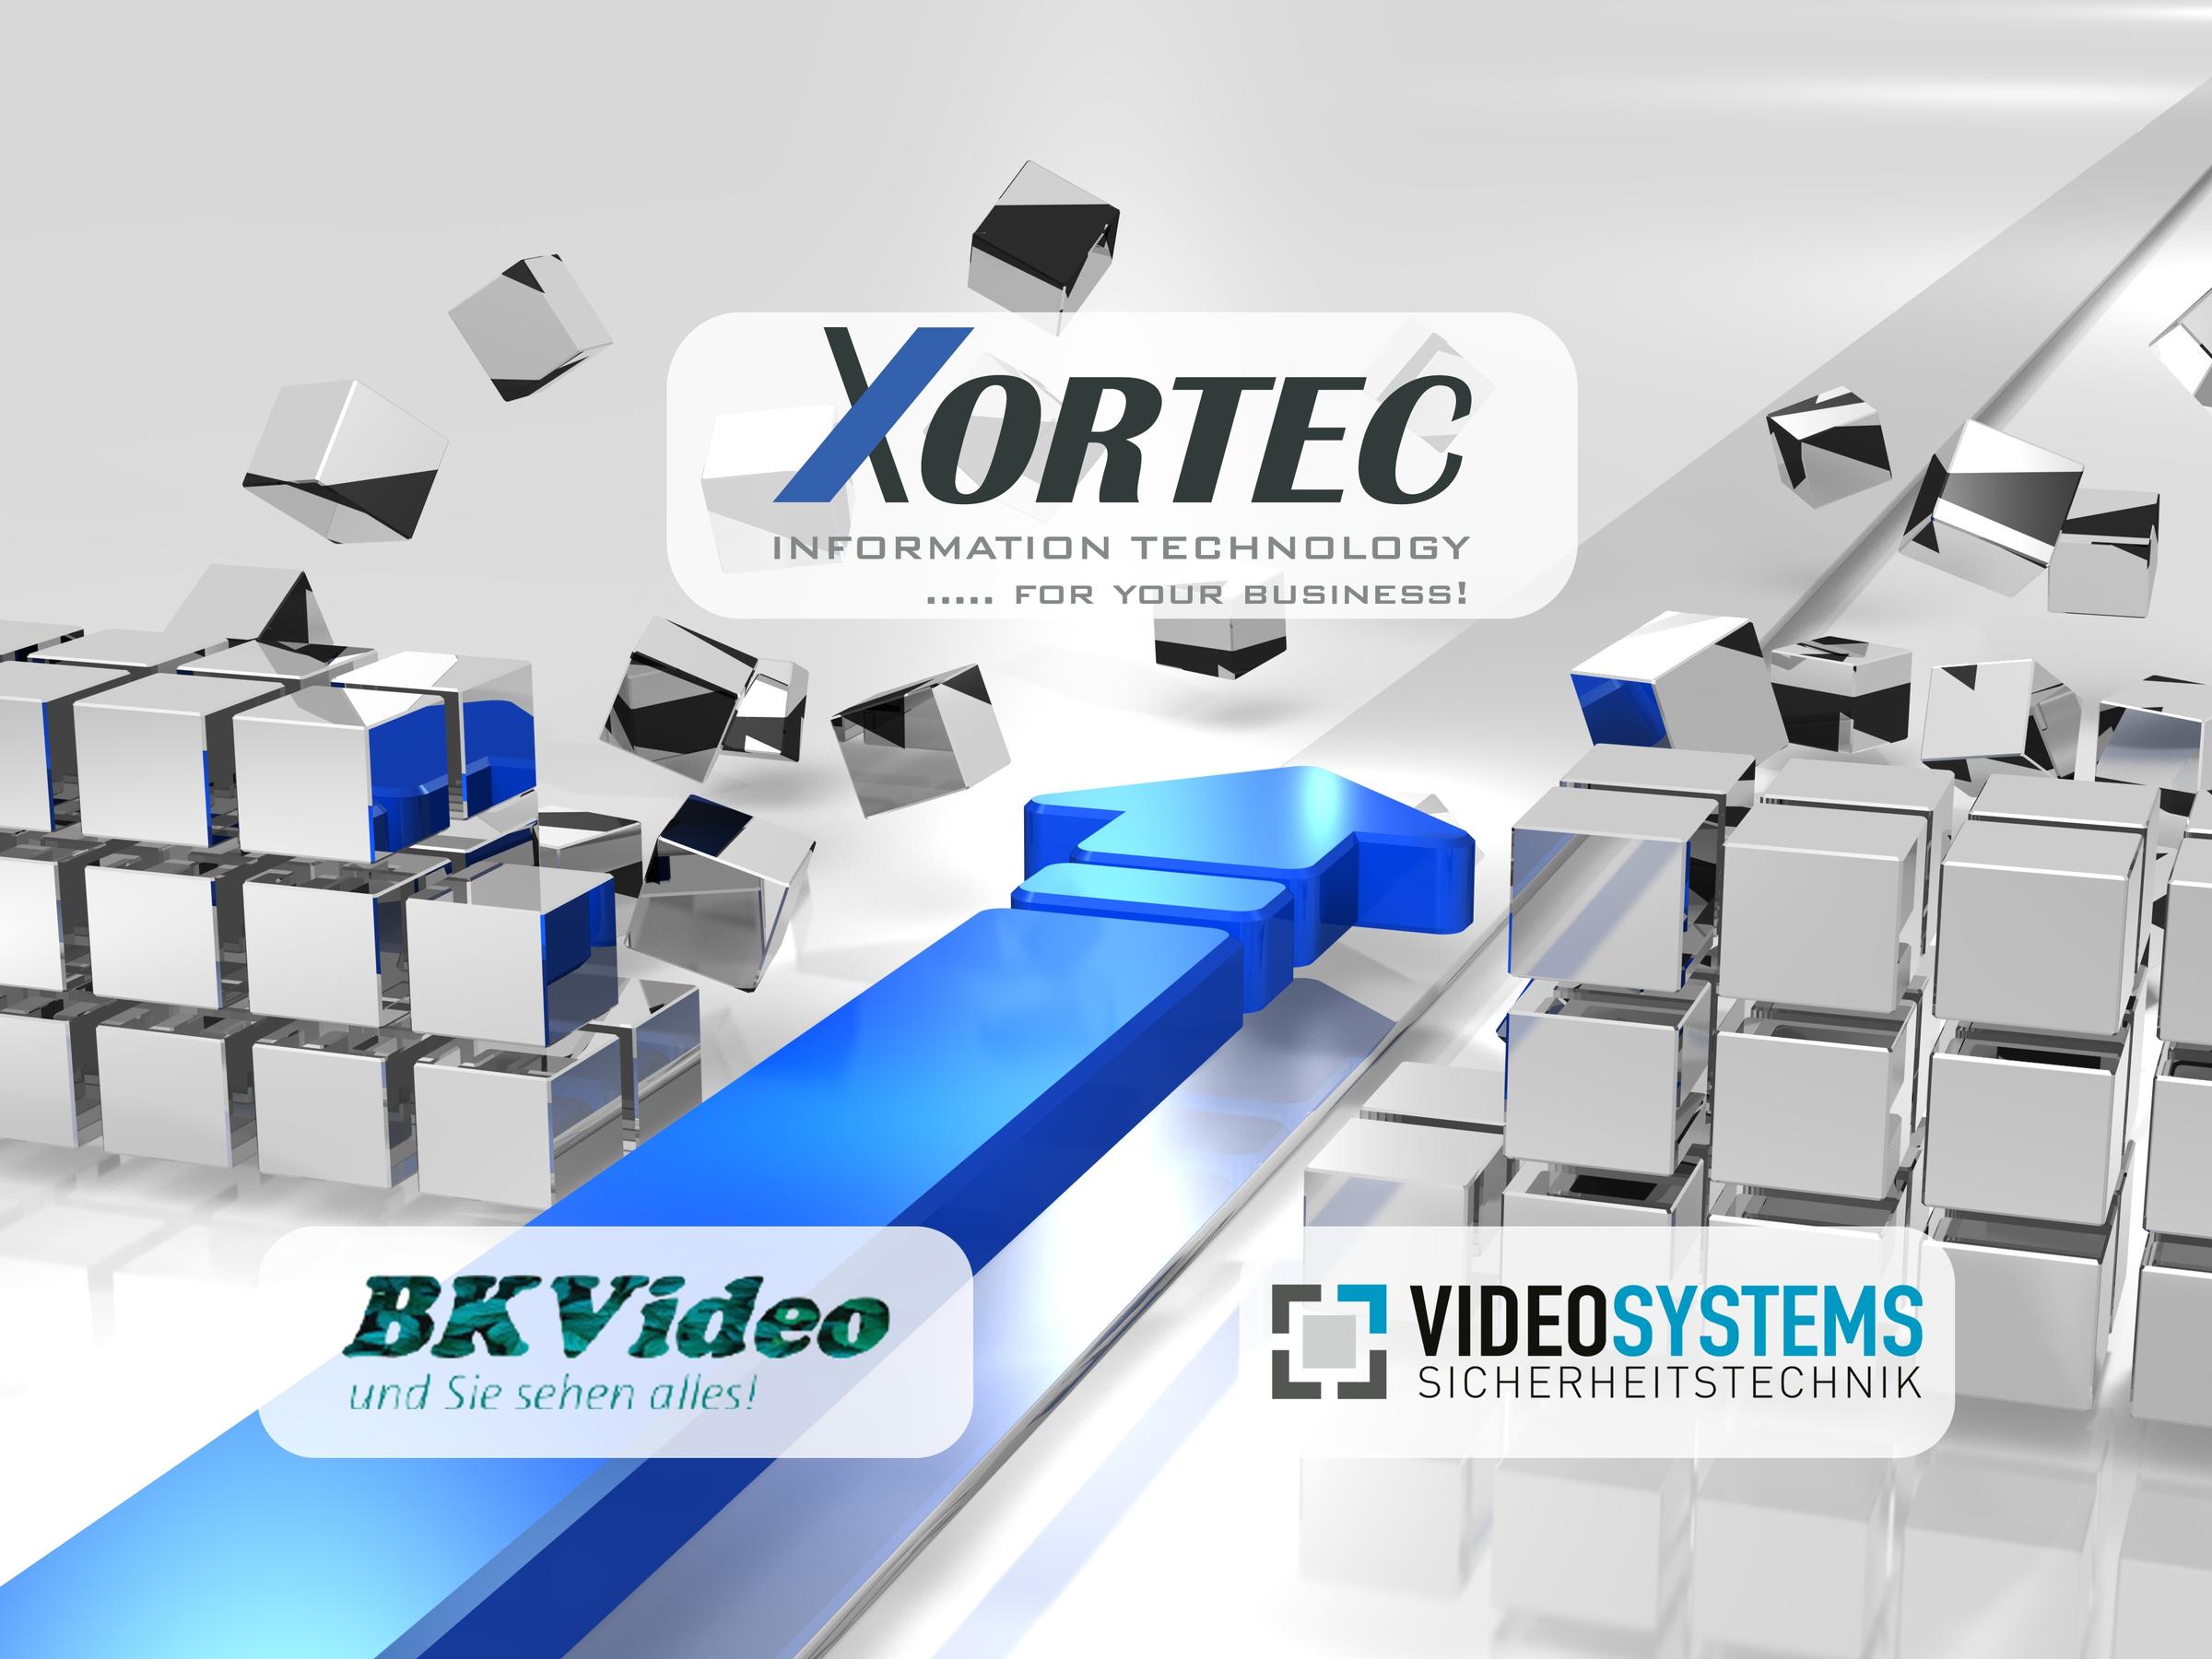 Nach der Übernahme von Videosystems Sicherungstechnik im März 2021 hat Xortec nun auch die Burgenkönig Video GmbH (BK-Video) erworben